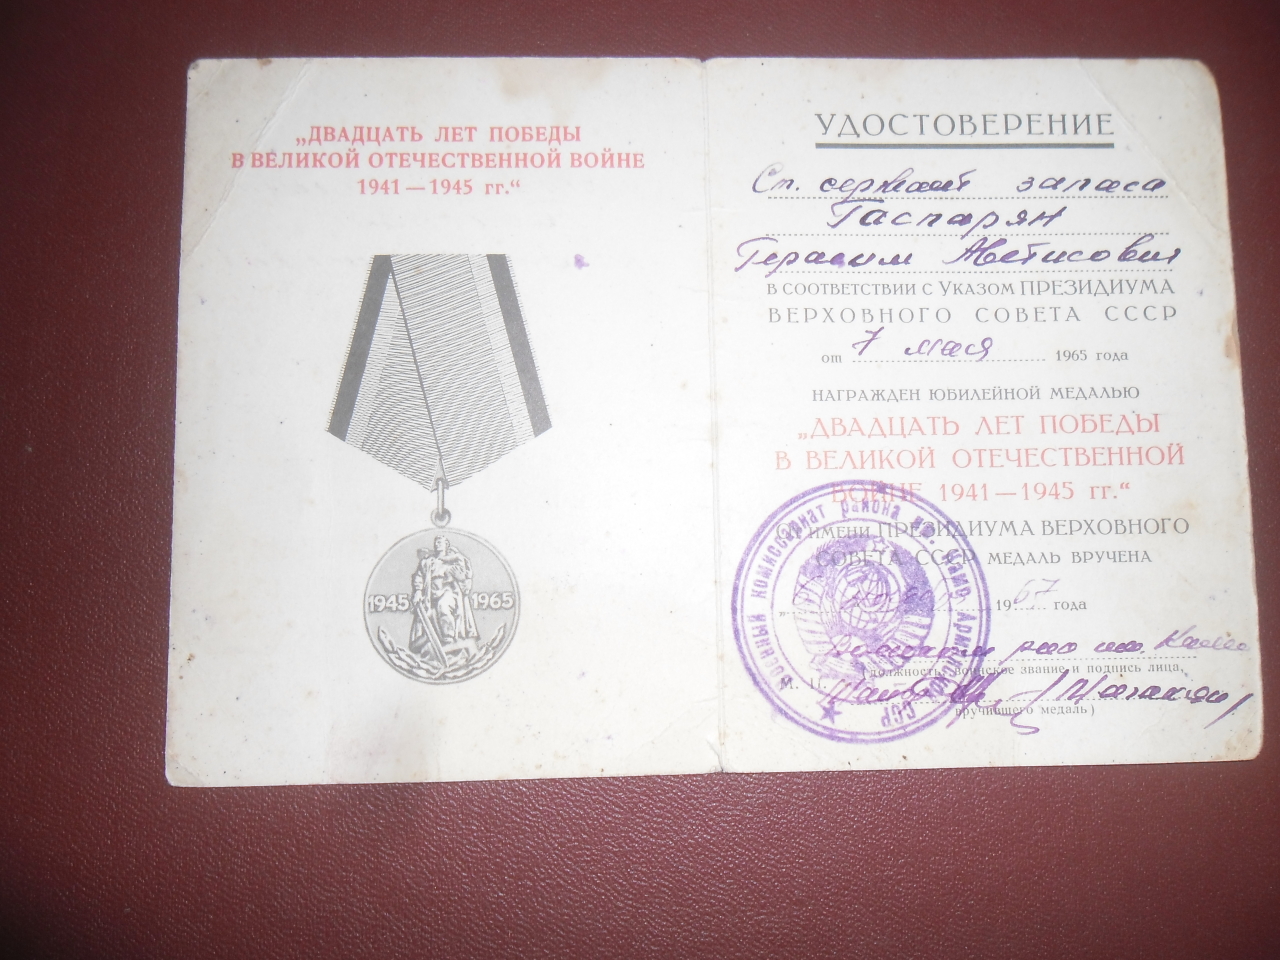  «1941-1945 թթ. Հայրենական պատերազմում տարած հաղթանակի 20-ամյակի» մեդալի՝ Գերասիմ  Ավետիսի Գասպարյանի ( II աշխարհամարտի մասնակից)